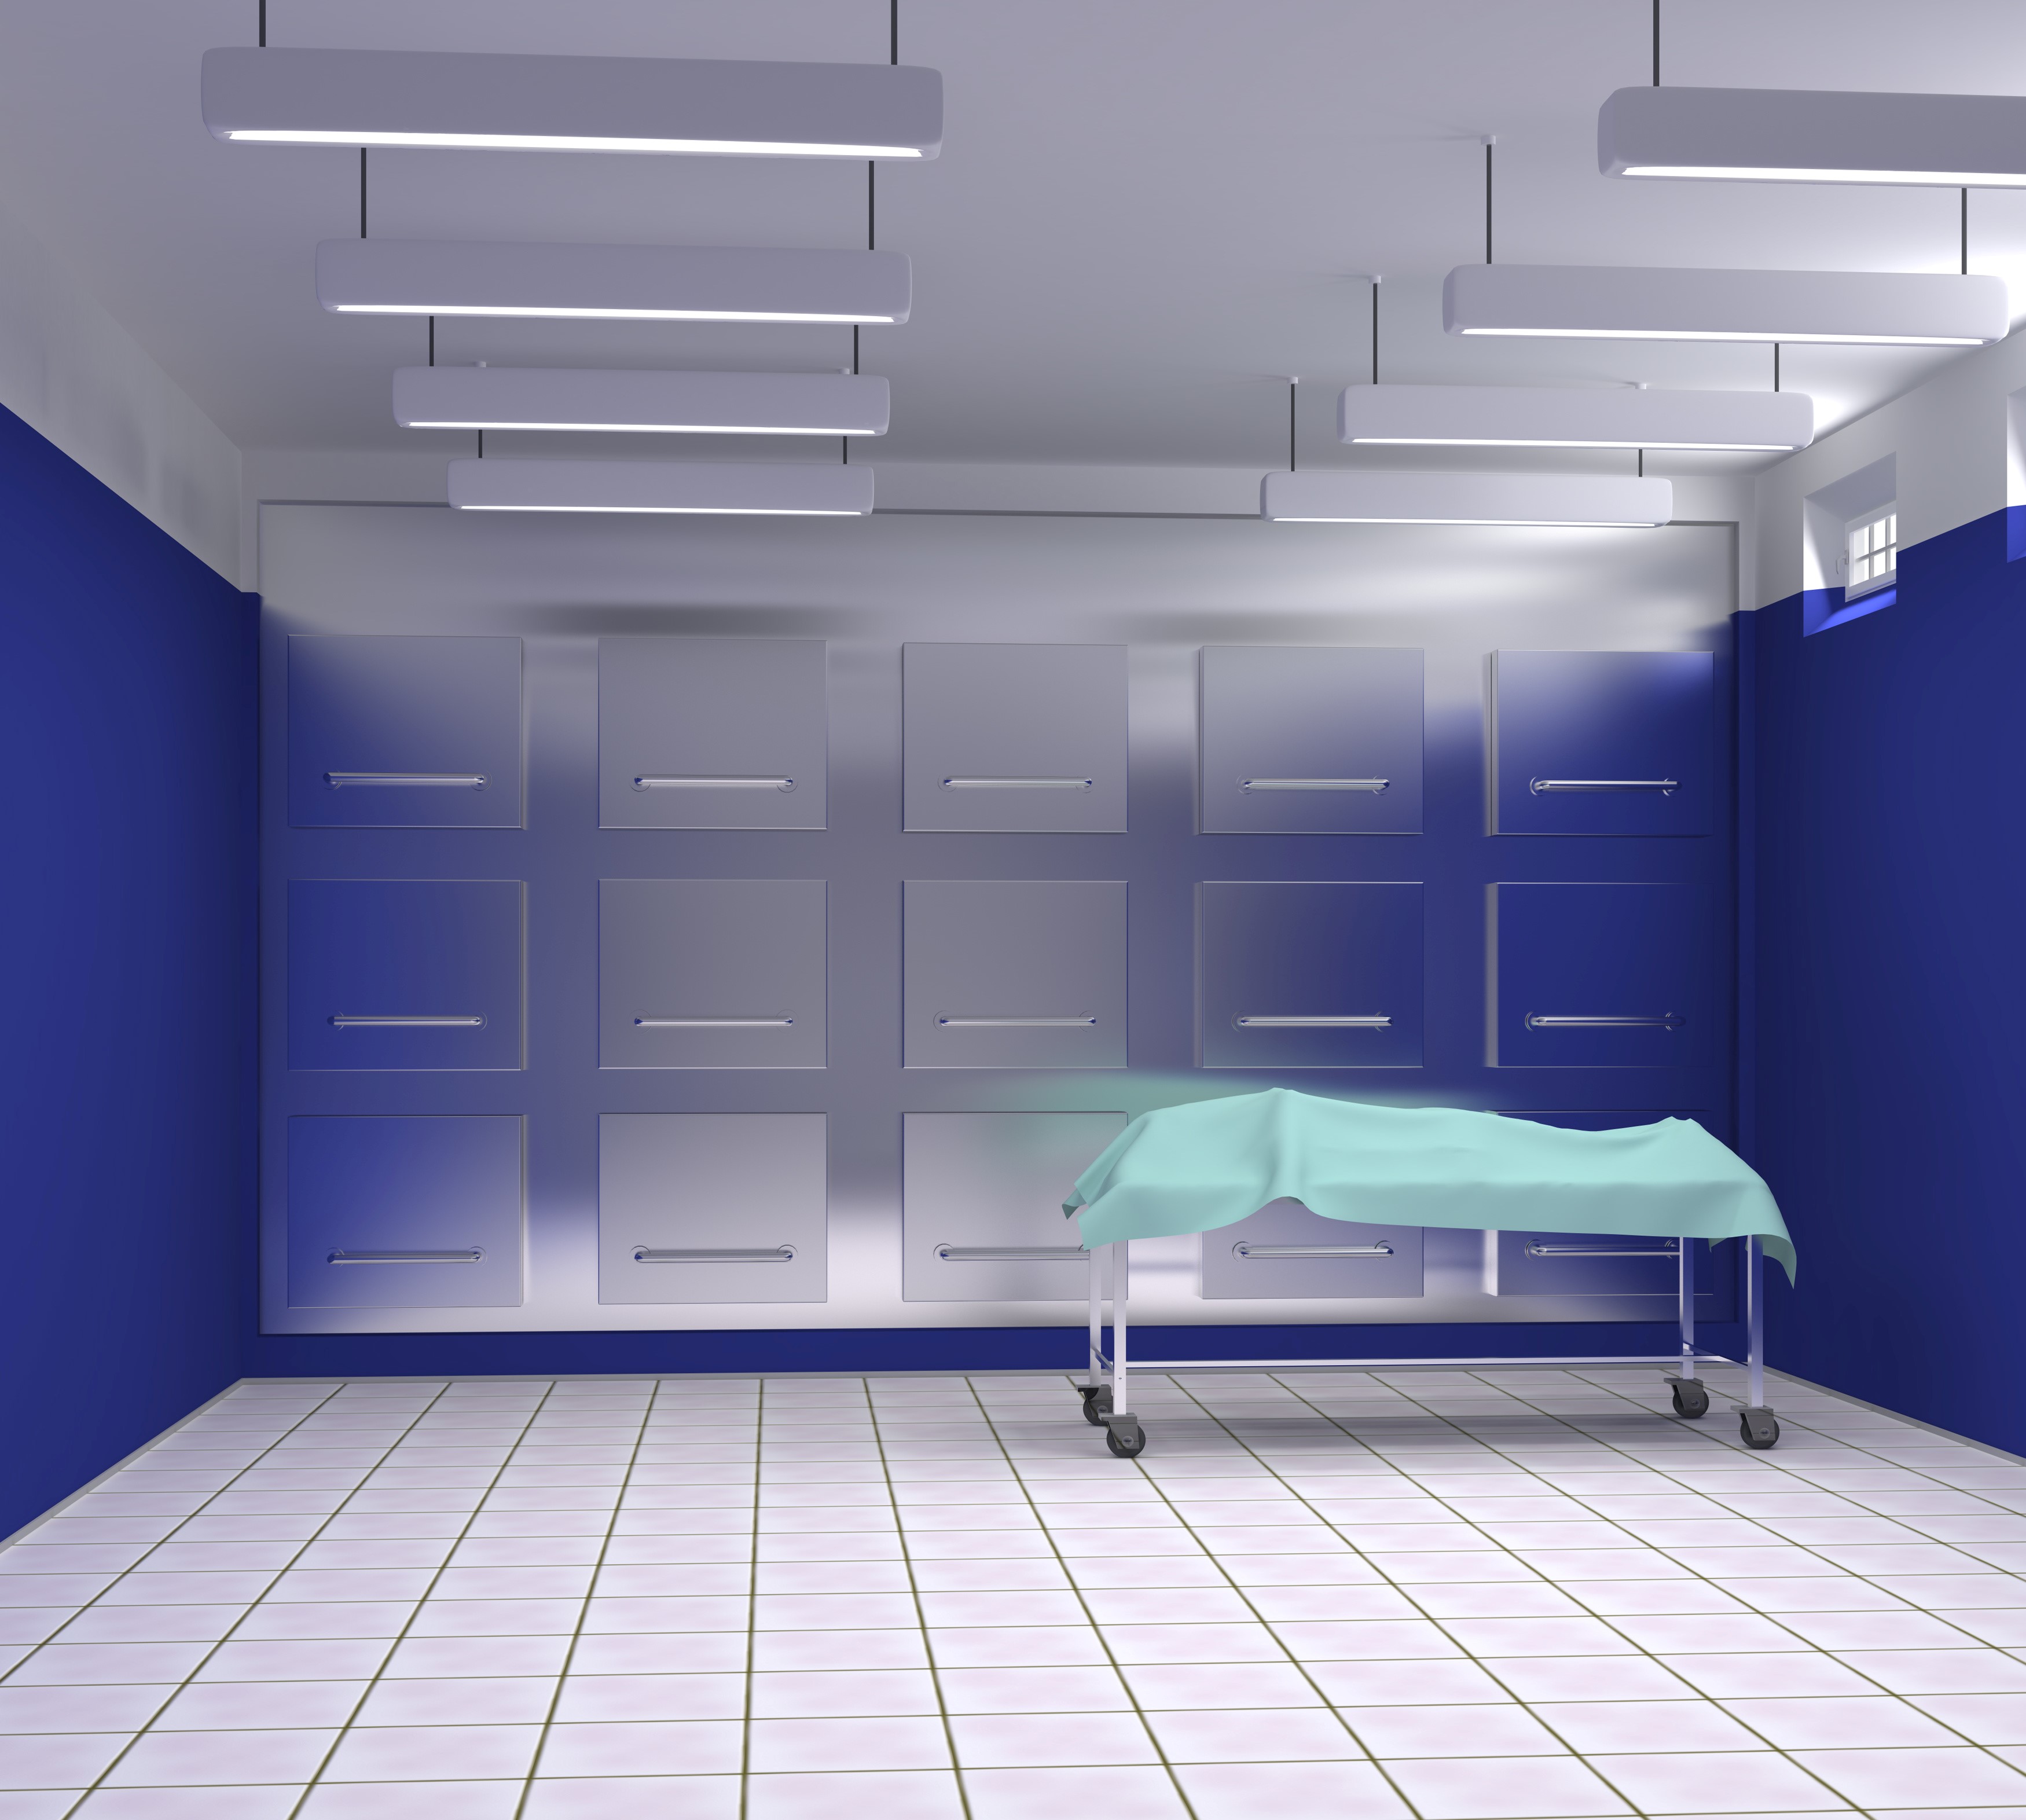 Interior of a modular morgue. 